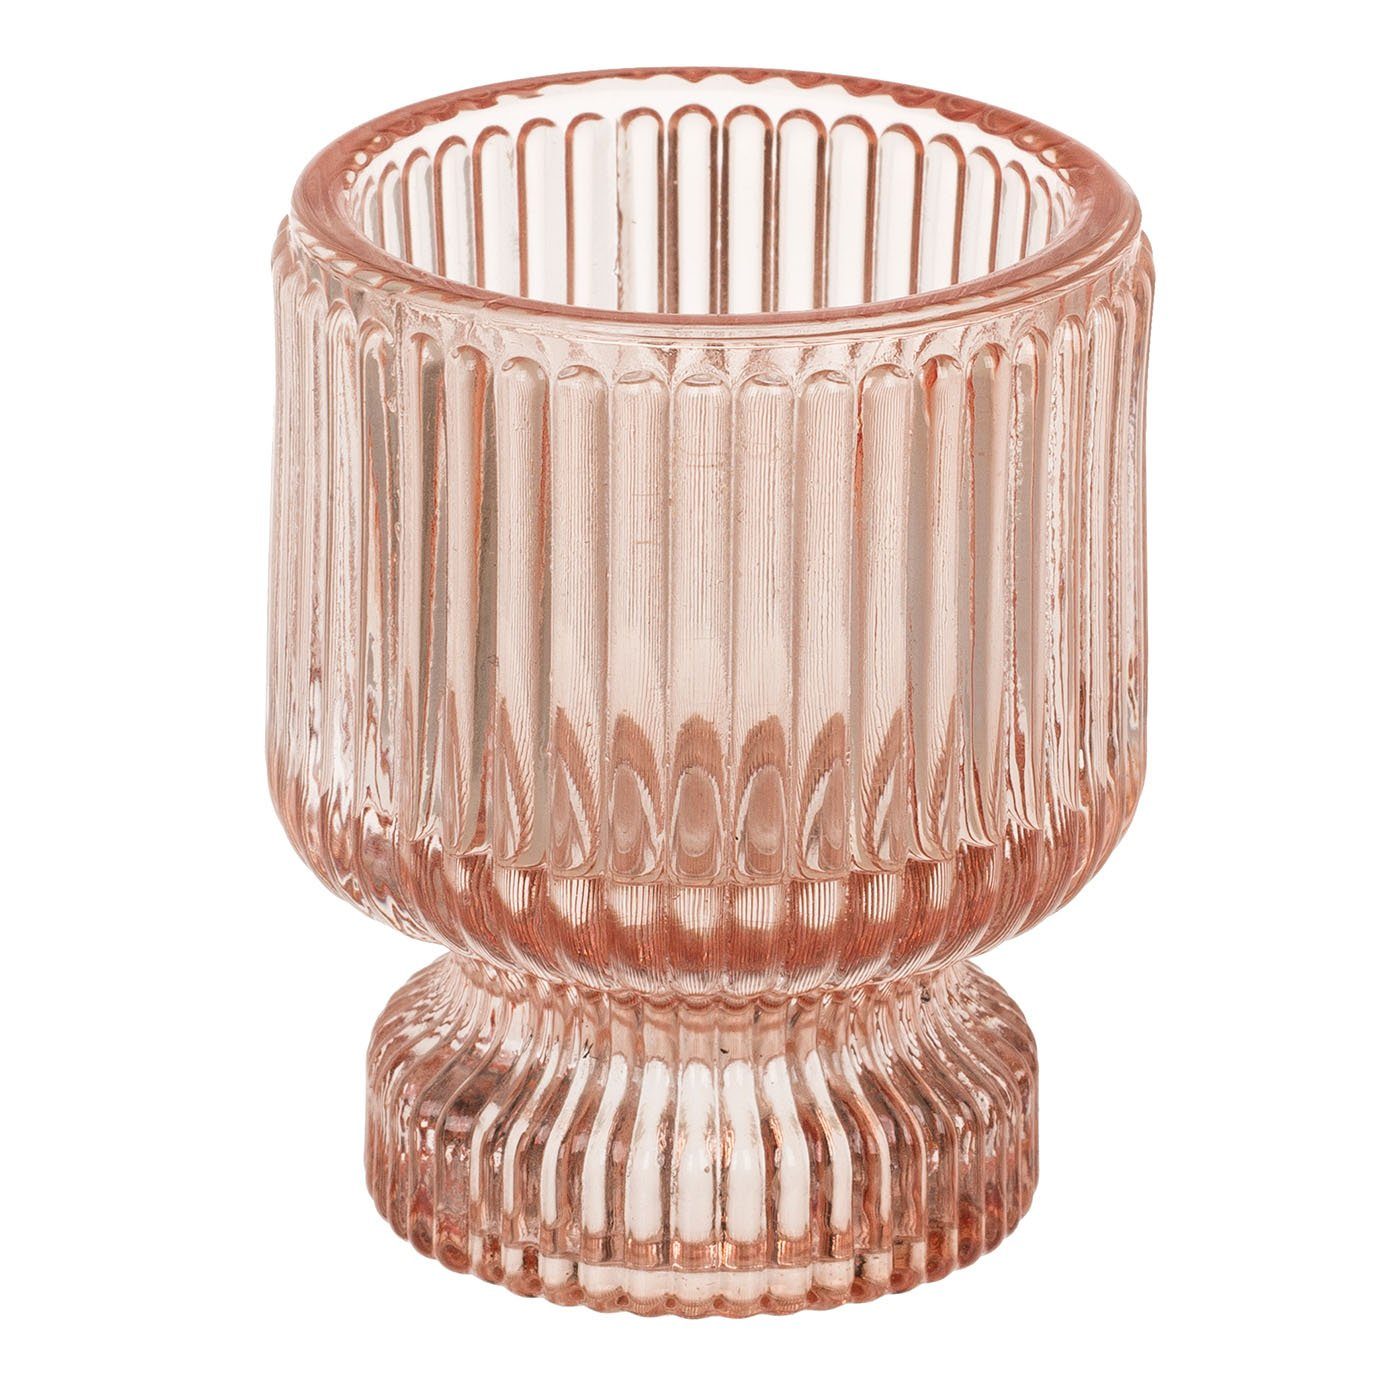 ReWu Kerzenständer Teelichthalter/Stabkerzenhalter 2 in 1 Farbig Braun 6 x 8 cm